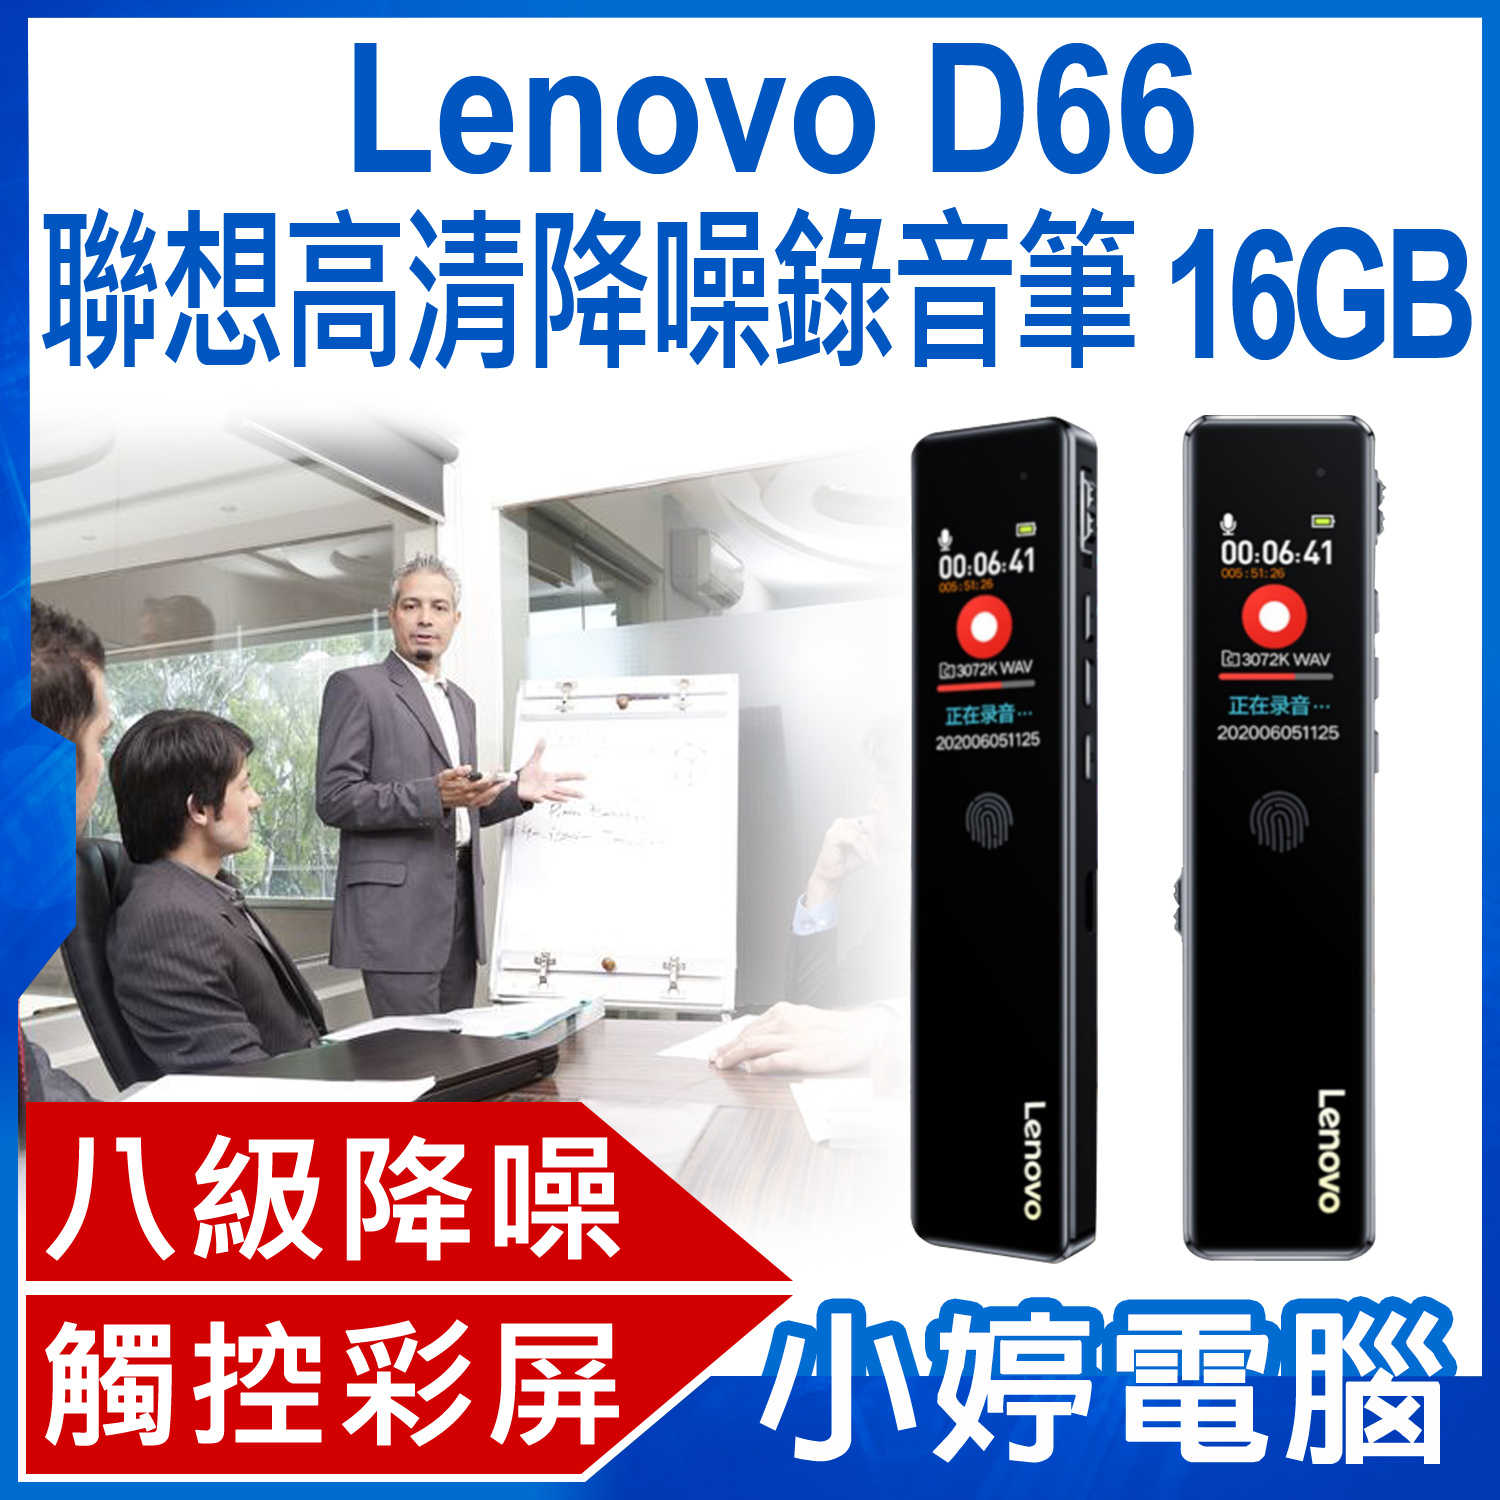 【小婷電腦】全新 Lenovo D66 聯想高清降噪錄音筆 16GB 八級降噪 高清音質 定時錄音 觸控操作